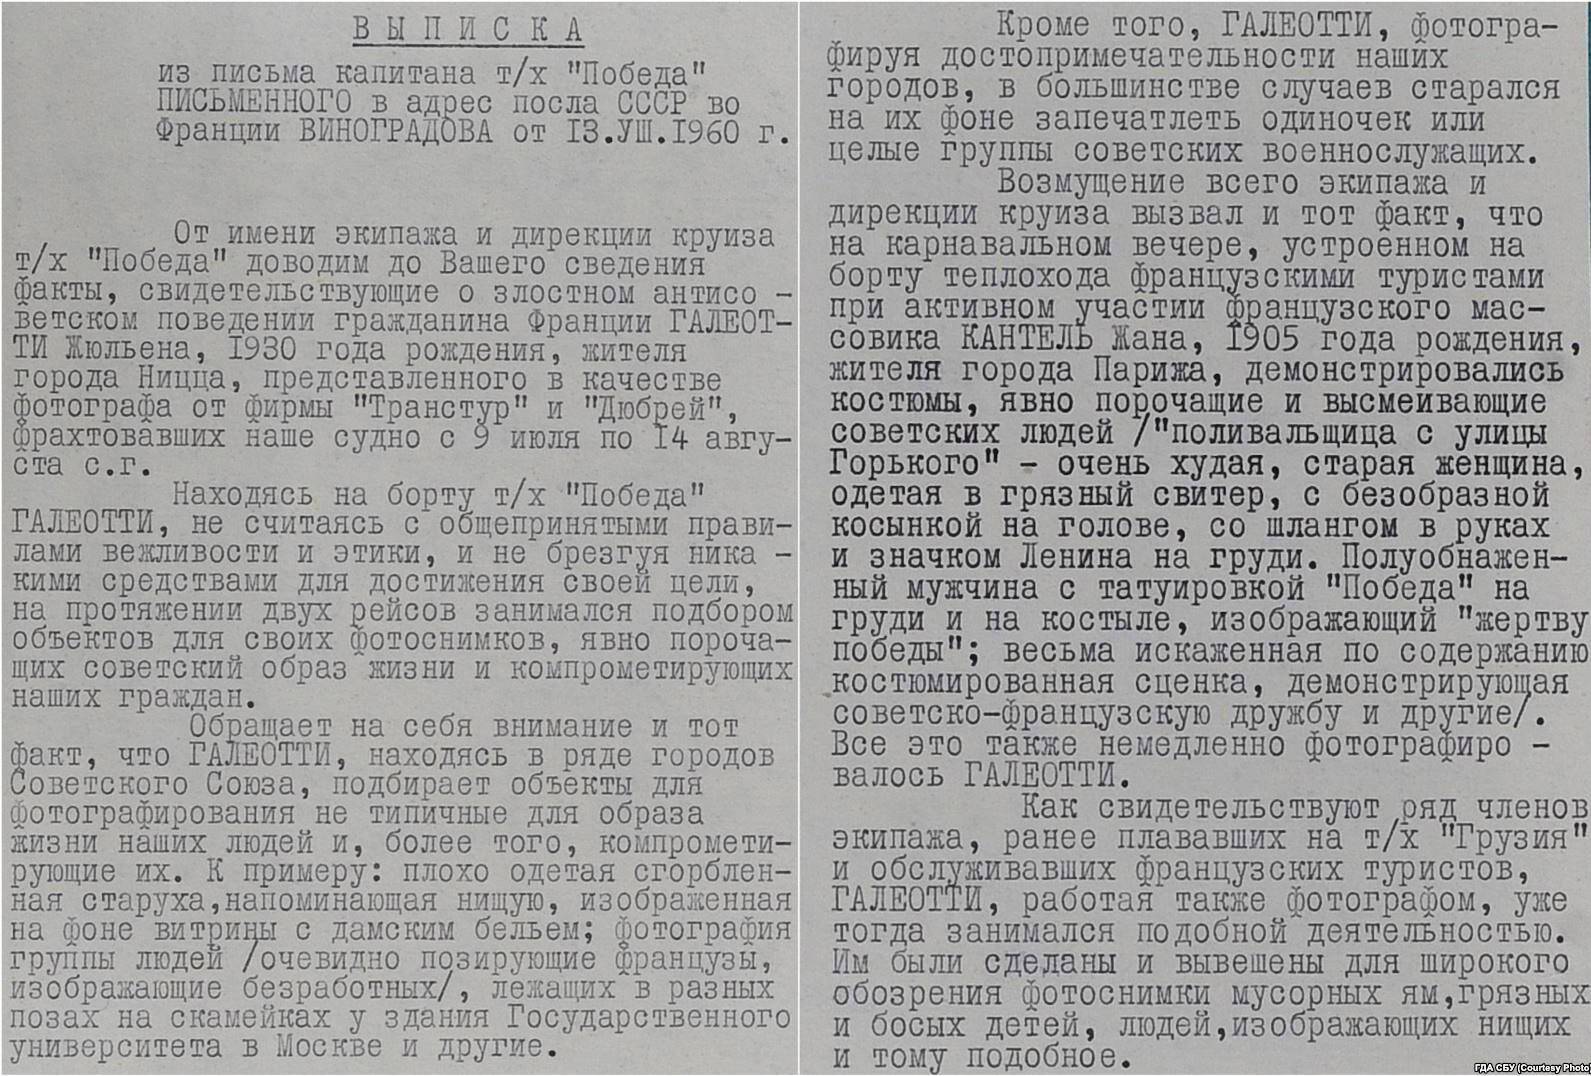 Отчет спецслужб СССР о "антисоветском" поведении гражданина Галеотти